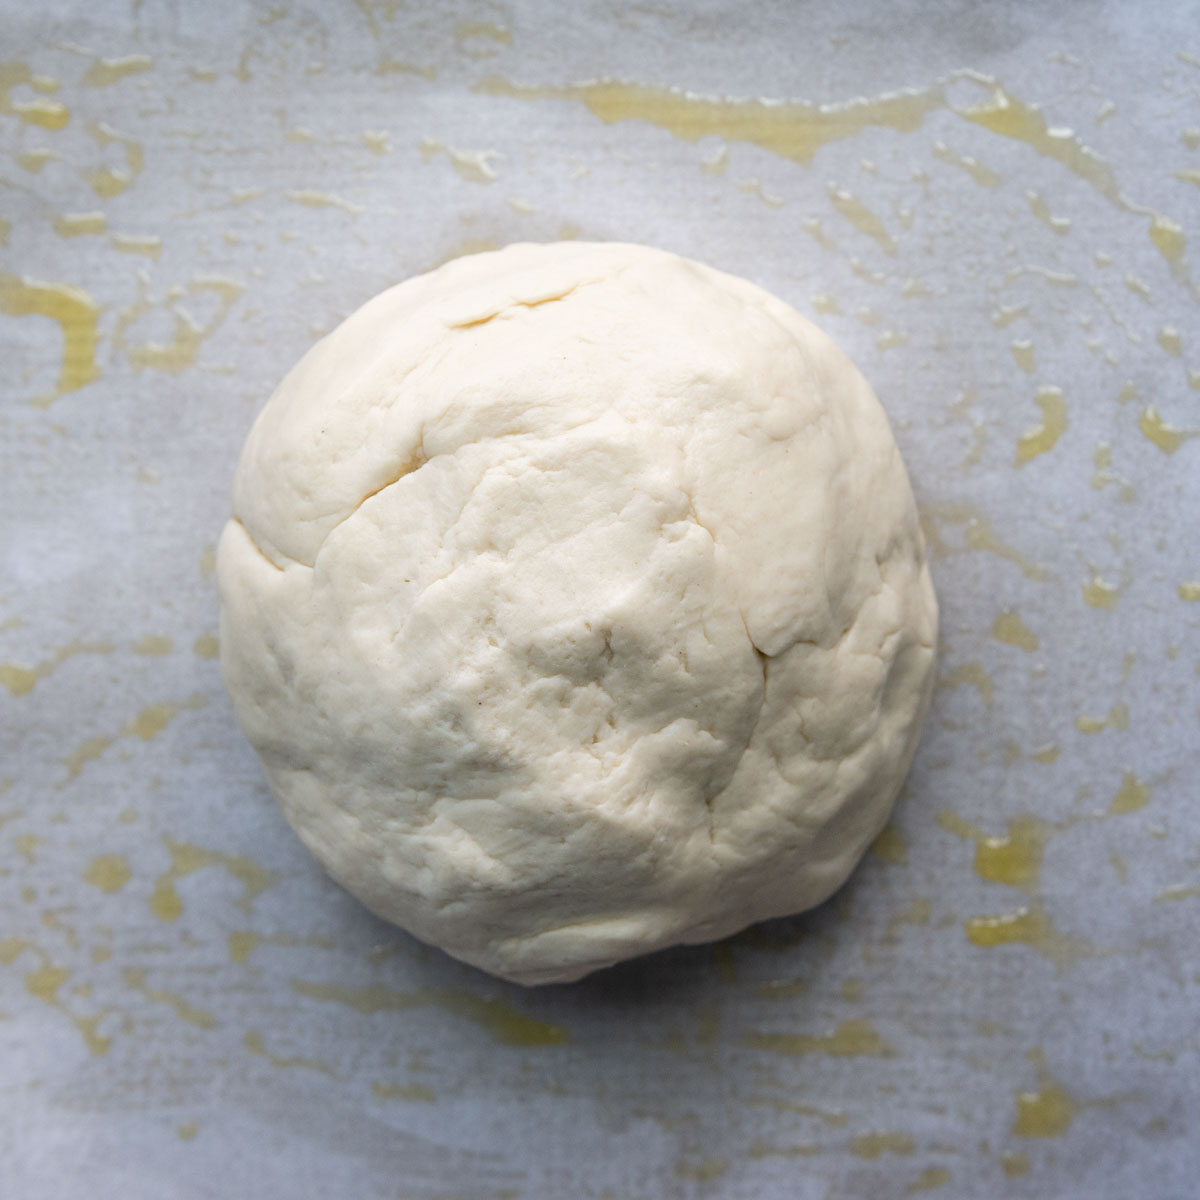 a round dough ball.